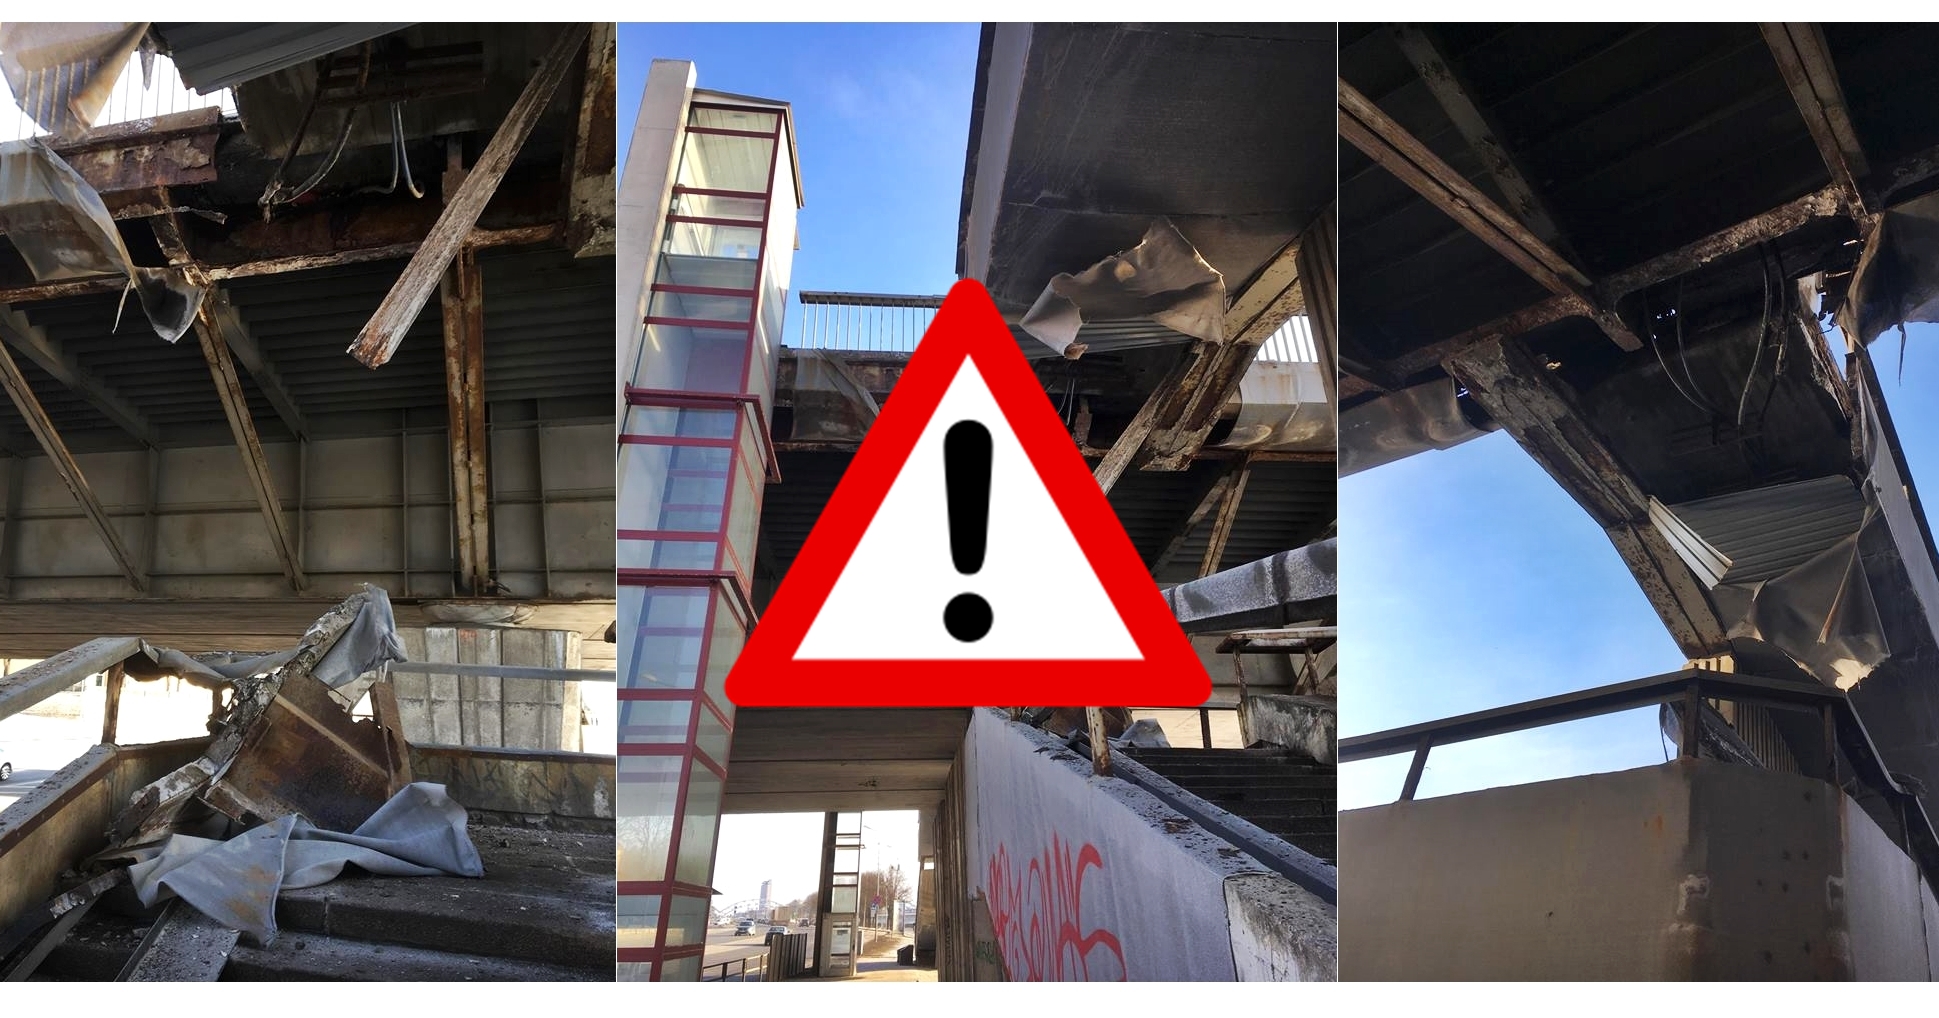 Brīdina neizmantot Vanšu tilta kāpnes 11. novembra krastmalā – tās rada apdraudējumu dzīvībai